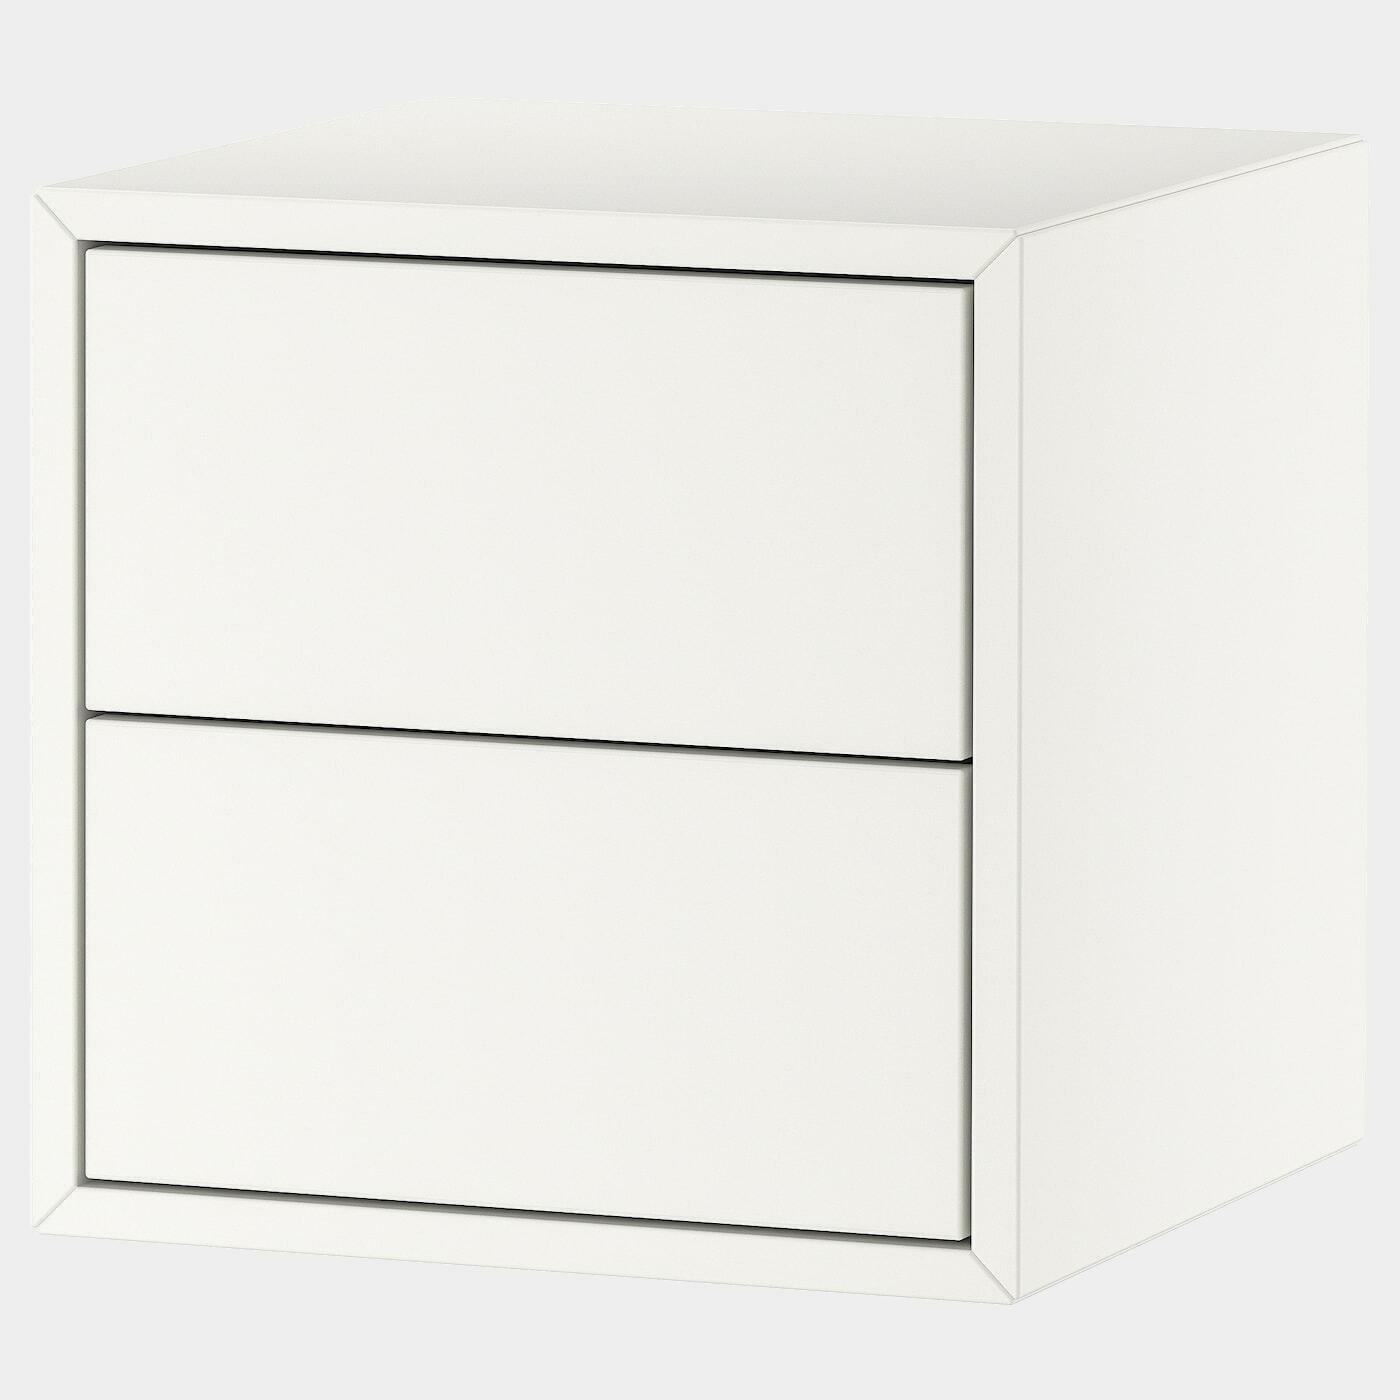 EKET Wandschrank mit 2 Schubladen  - Schränke - Möbel Ideen für dein Zuhause von Home Trends. Möbel Trends von Social Media Influencer für dein Skandi Zuhause.